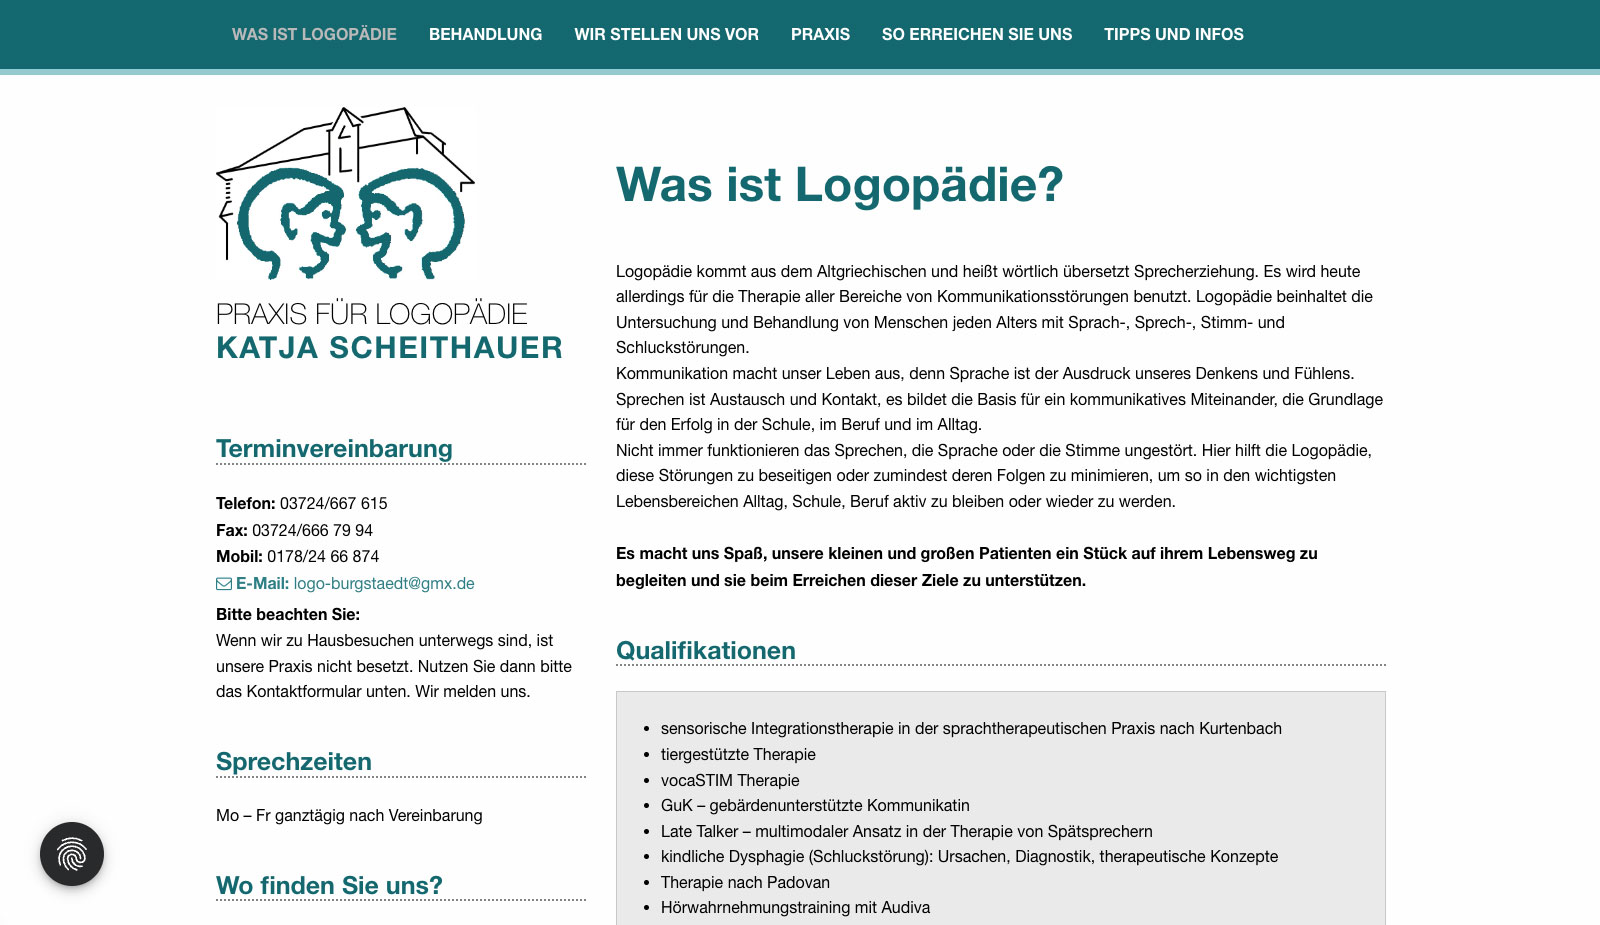 Website Logopädie Burgstädt von transparent